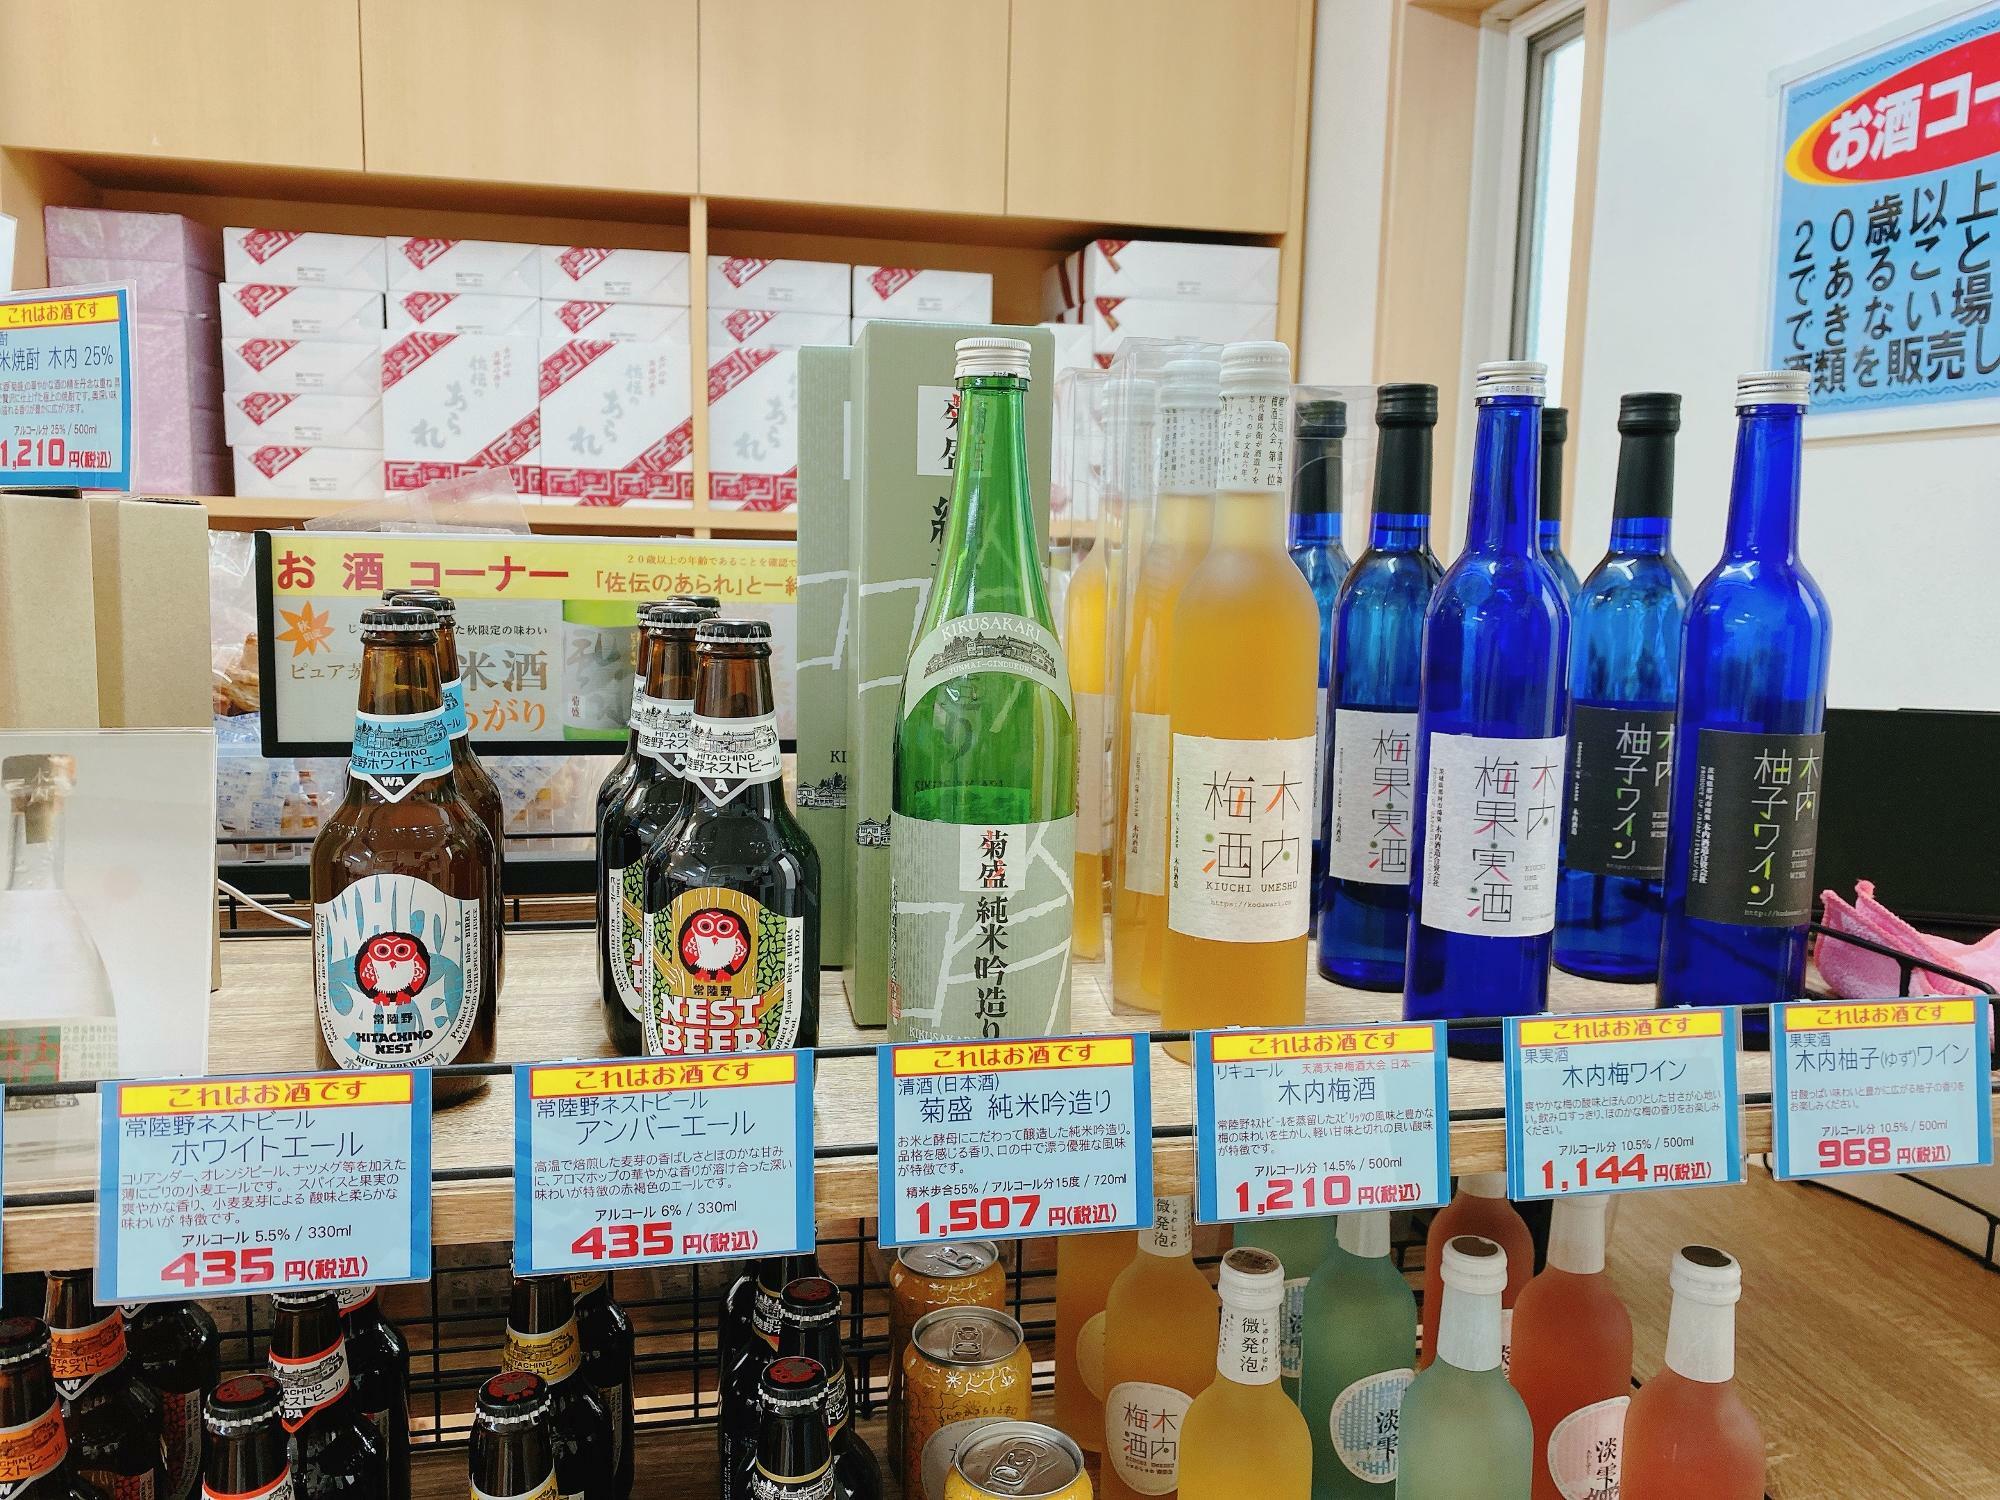 ビール、日本酒、梅酒、ワイン、リキュール、色々あります